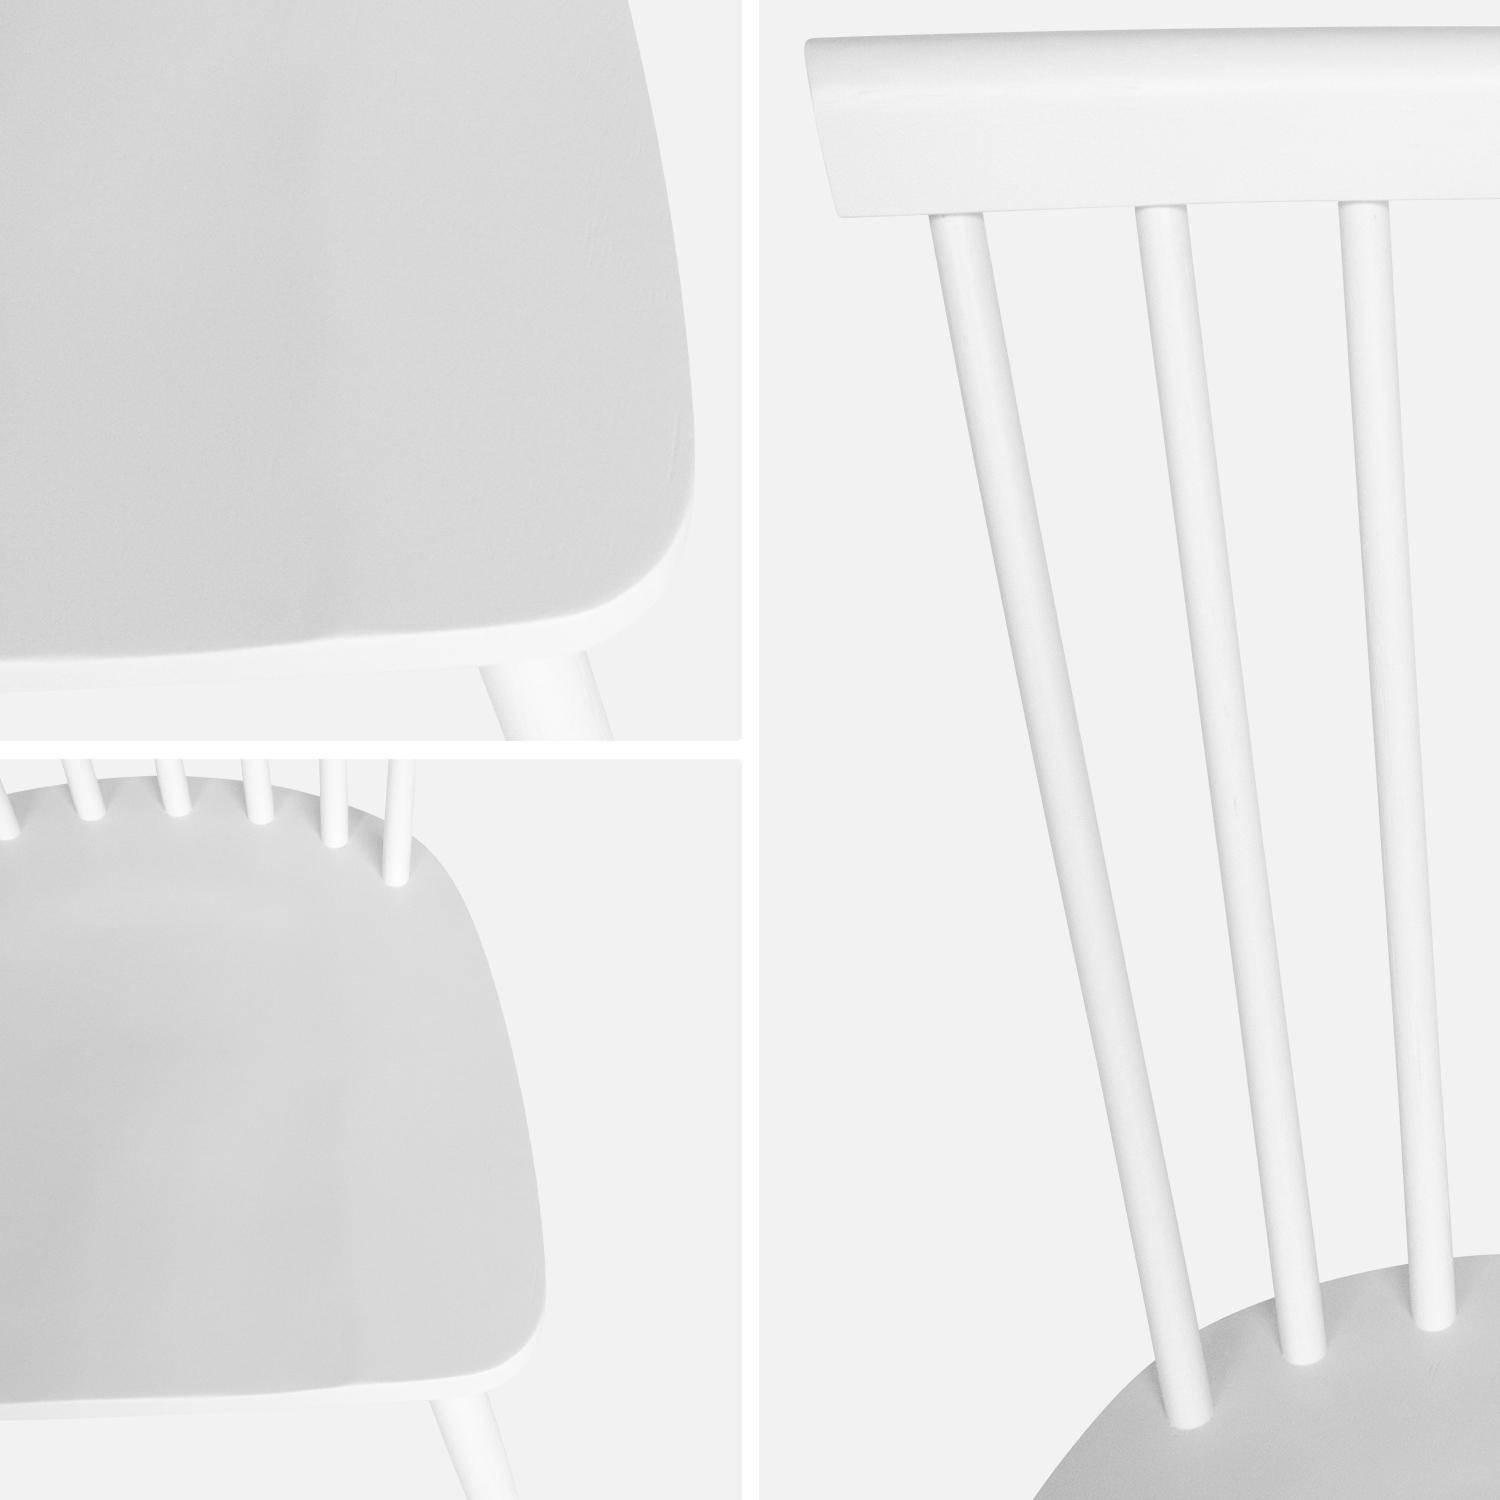 Set di 2 sedie da bar in legno di gomma bianco, ROMIE, L 50,8 x P 44,2 x H 90 cm. Consegna gratuita, garanzia di 2 anni, miglior prezzo garantito!,sweeek,Photo6